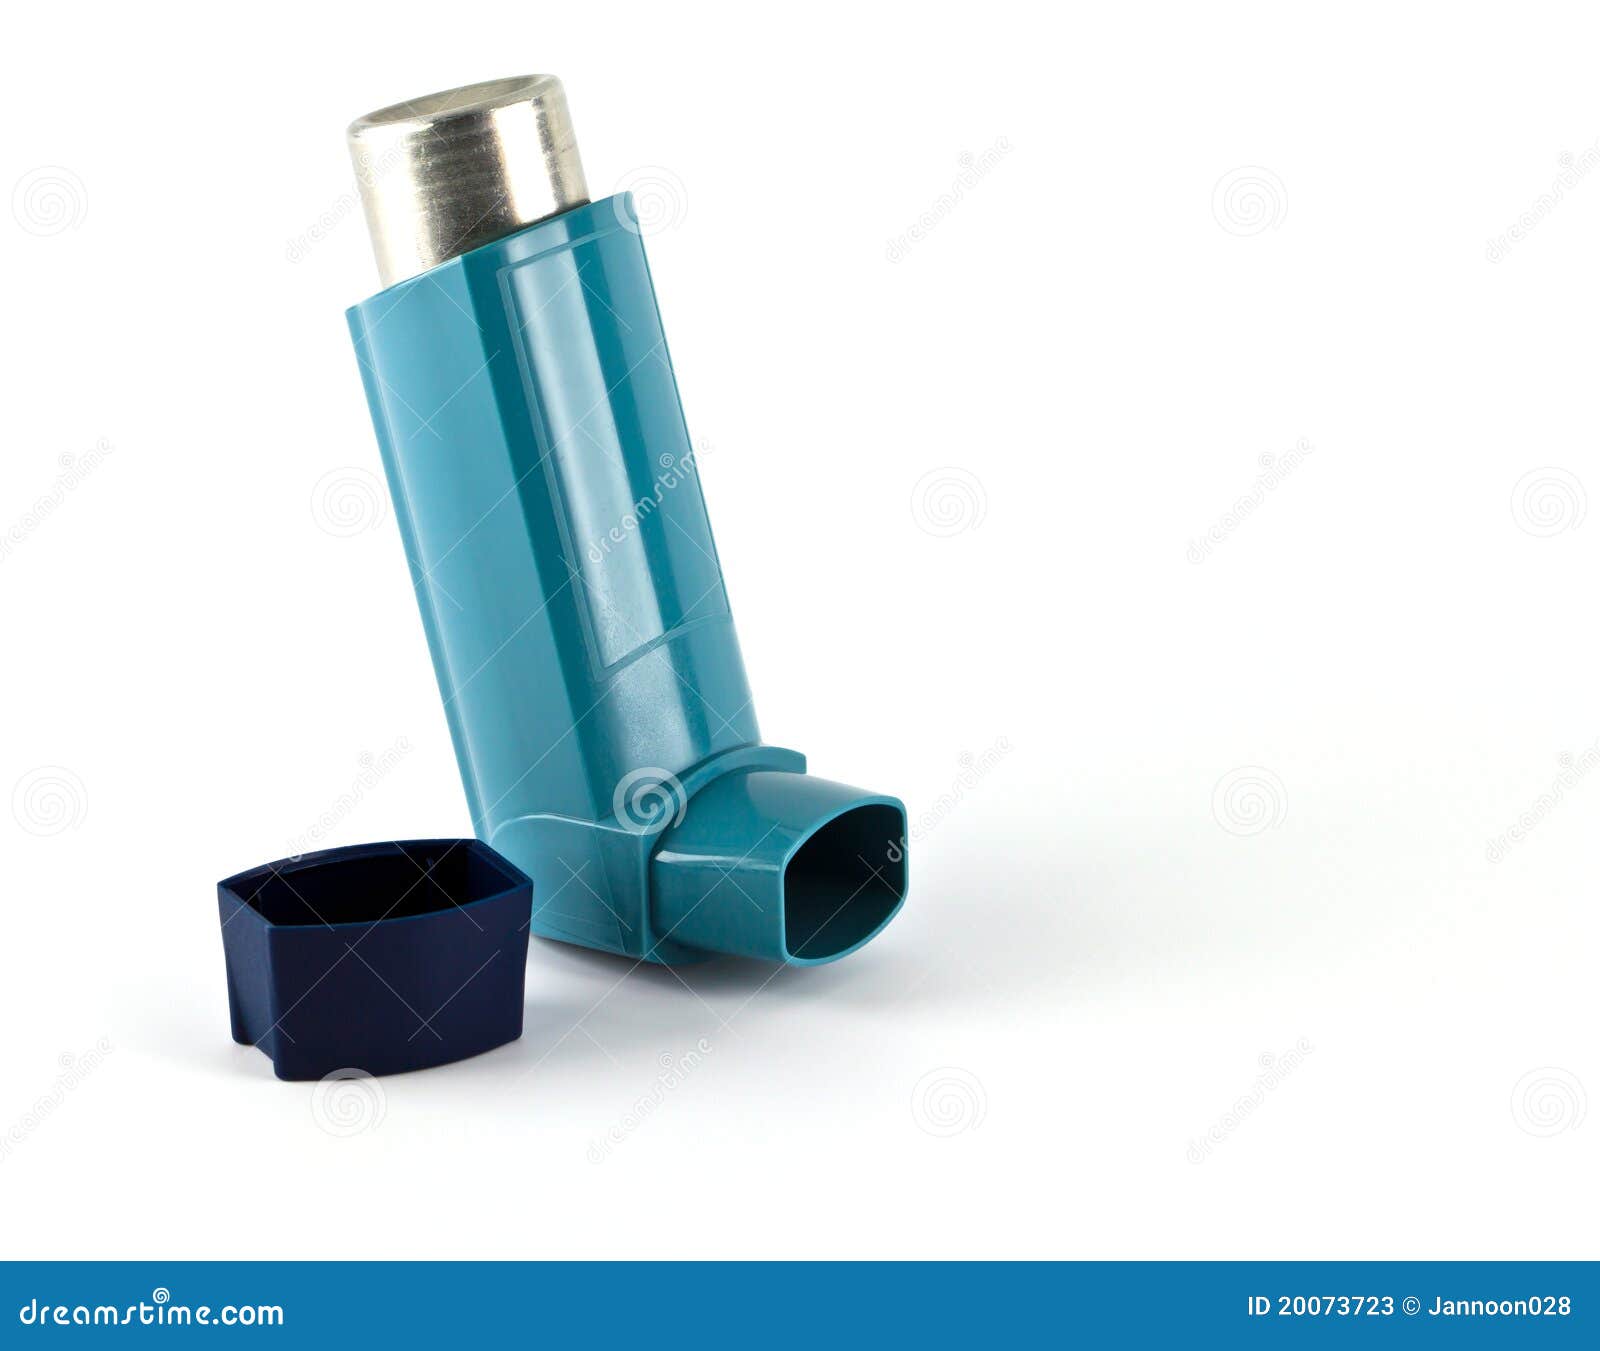 产品从0到1的过程，哮喘吸入器设计 - 普象网